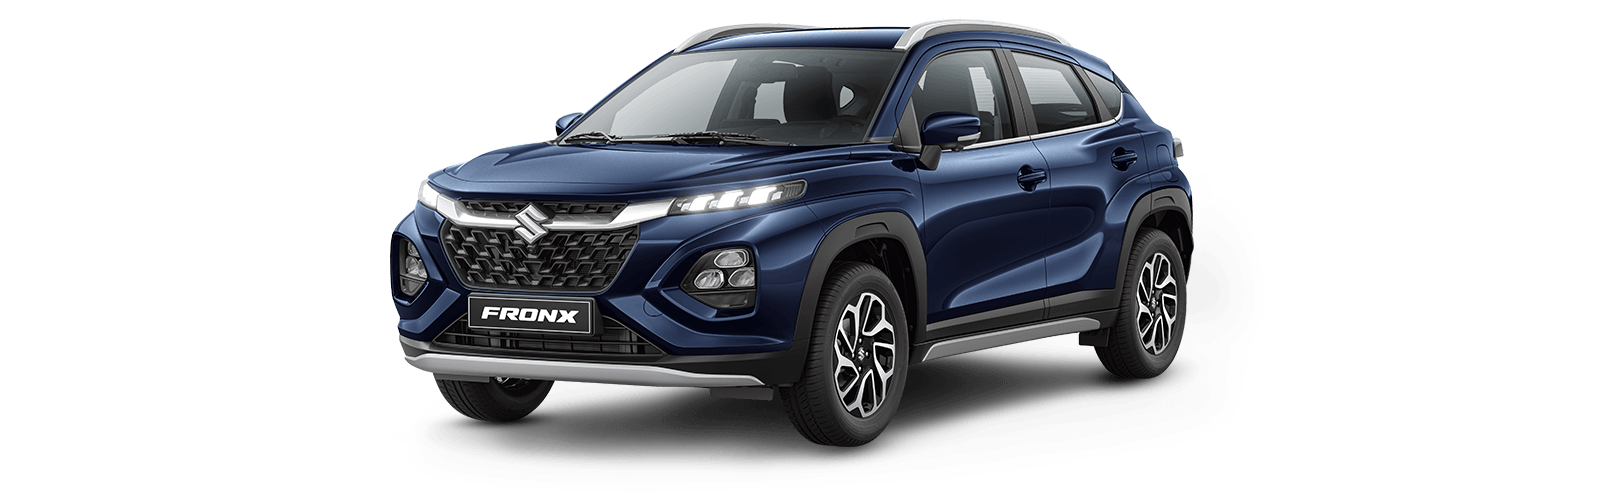 Suzuki-FRONX-HIBRIDA-GLX-AT-Blue.png